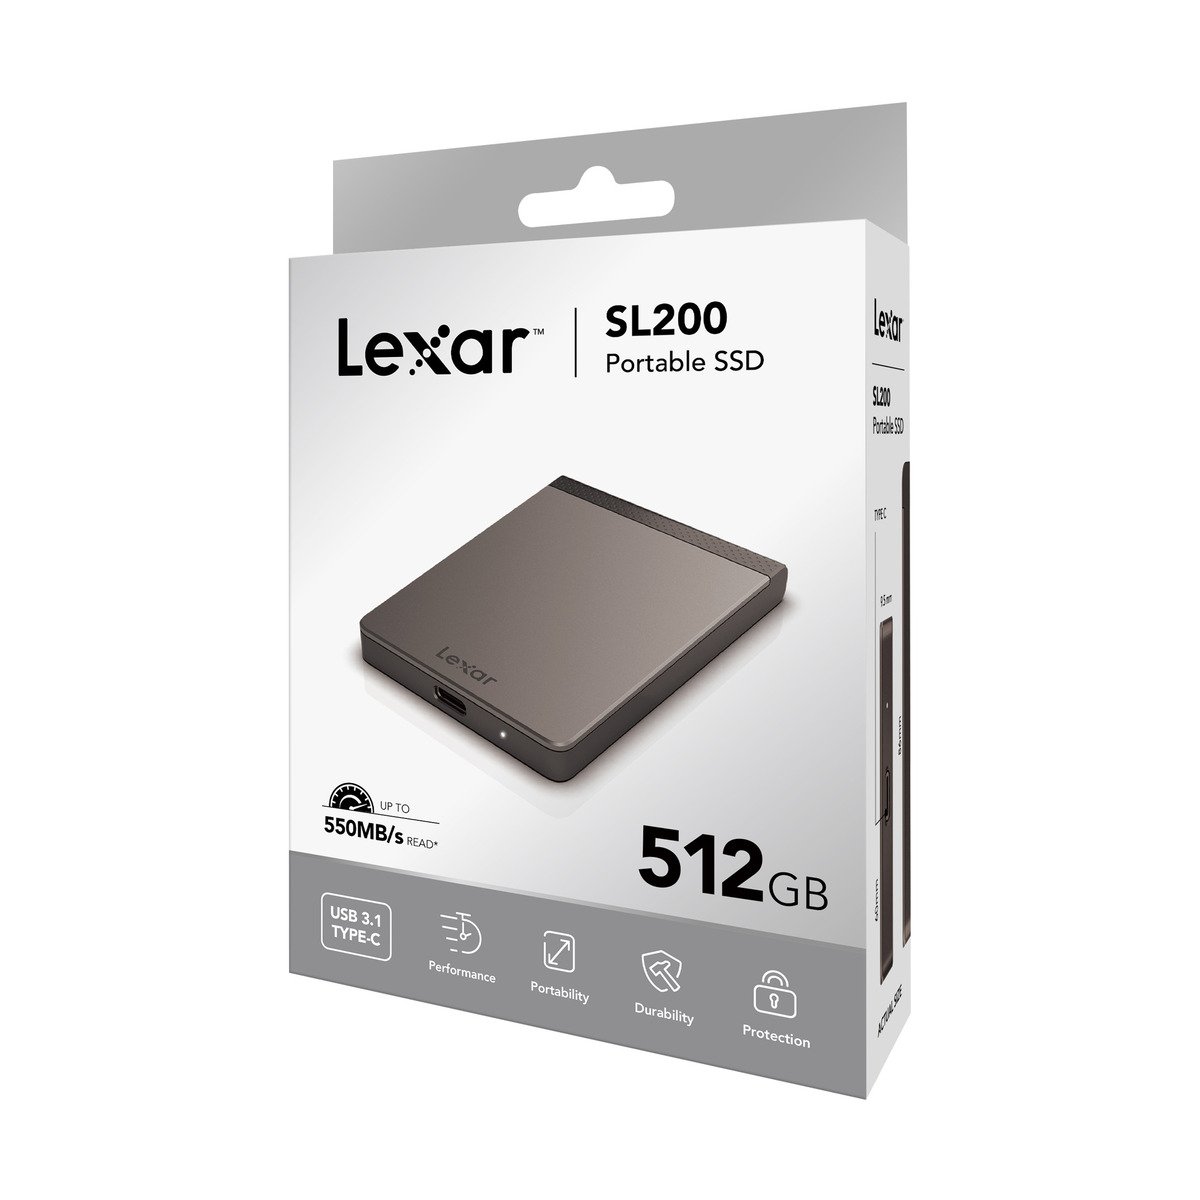 Lexar SL200 Portable SSD 512GB